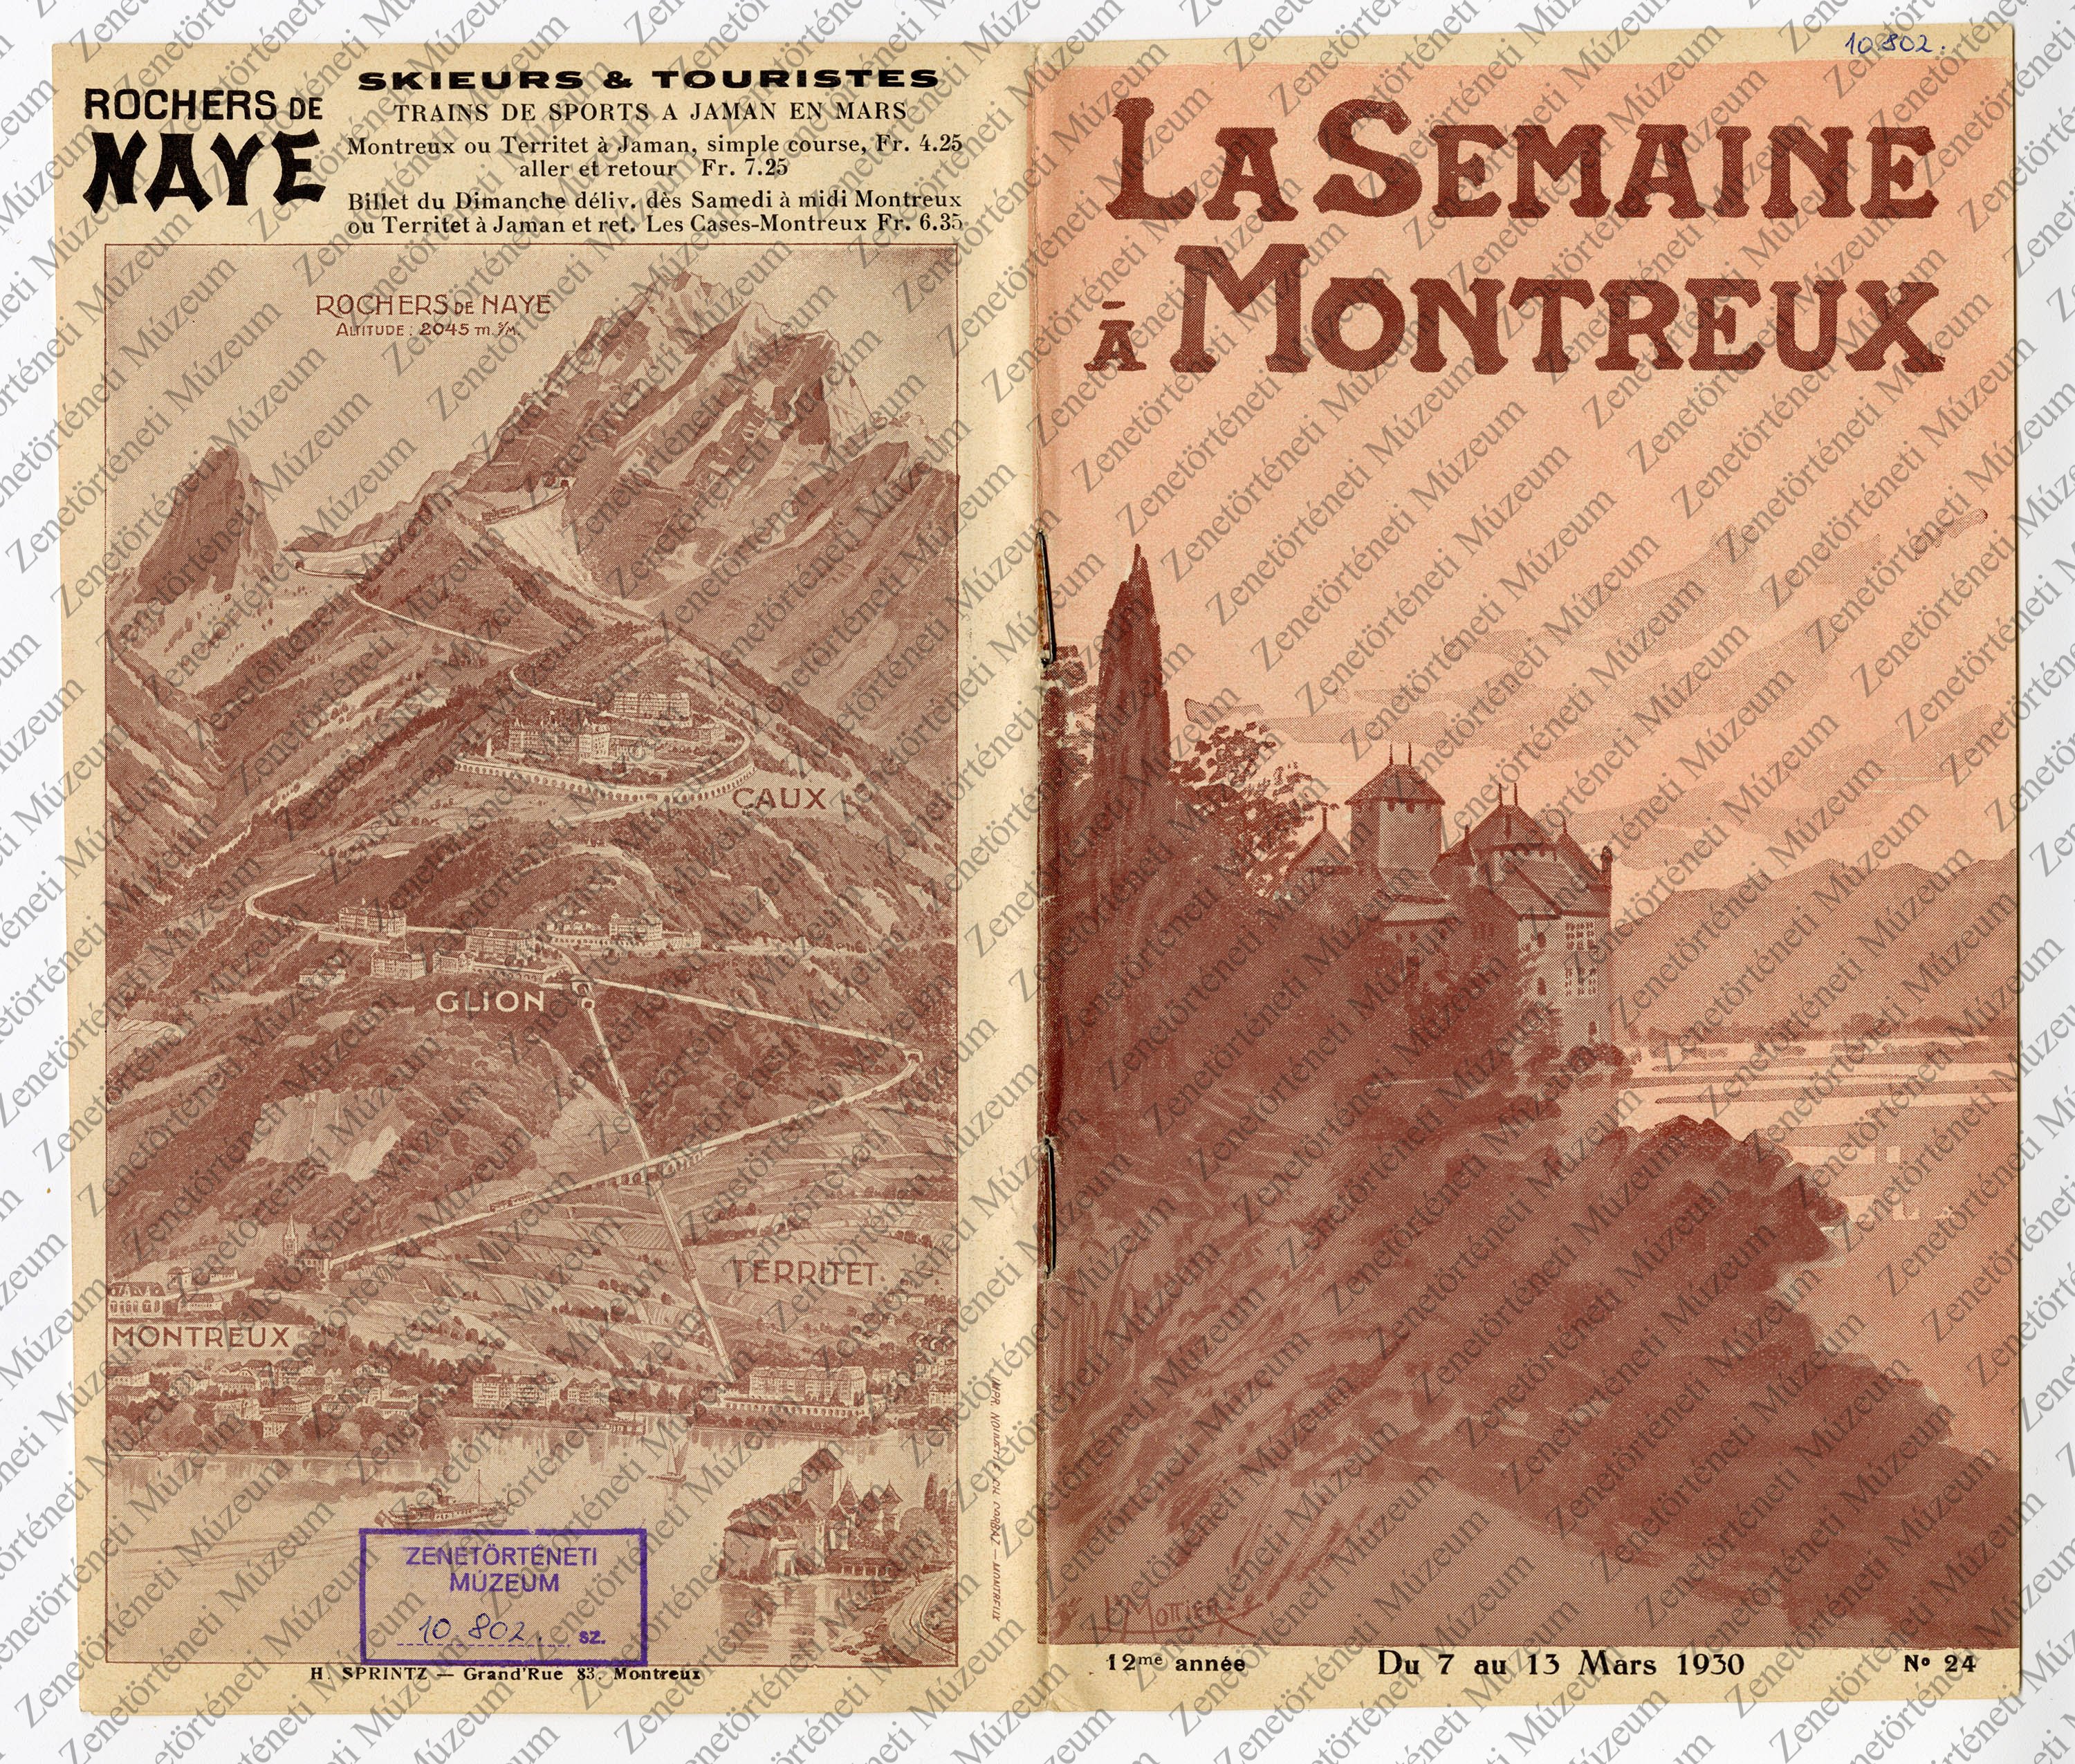 La Semaine à Montreux - műsorfüzet, 1930. márc. 7-13. (Zenetörténeti Múzeum CC BY-NC-SA)